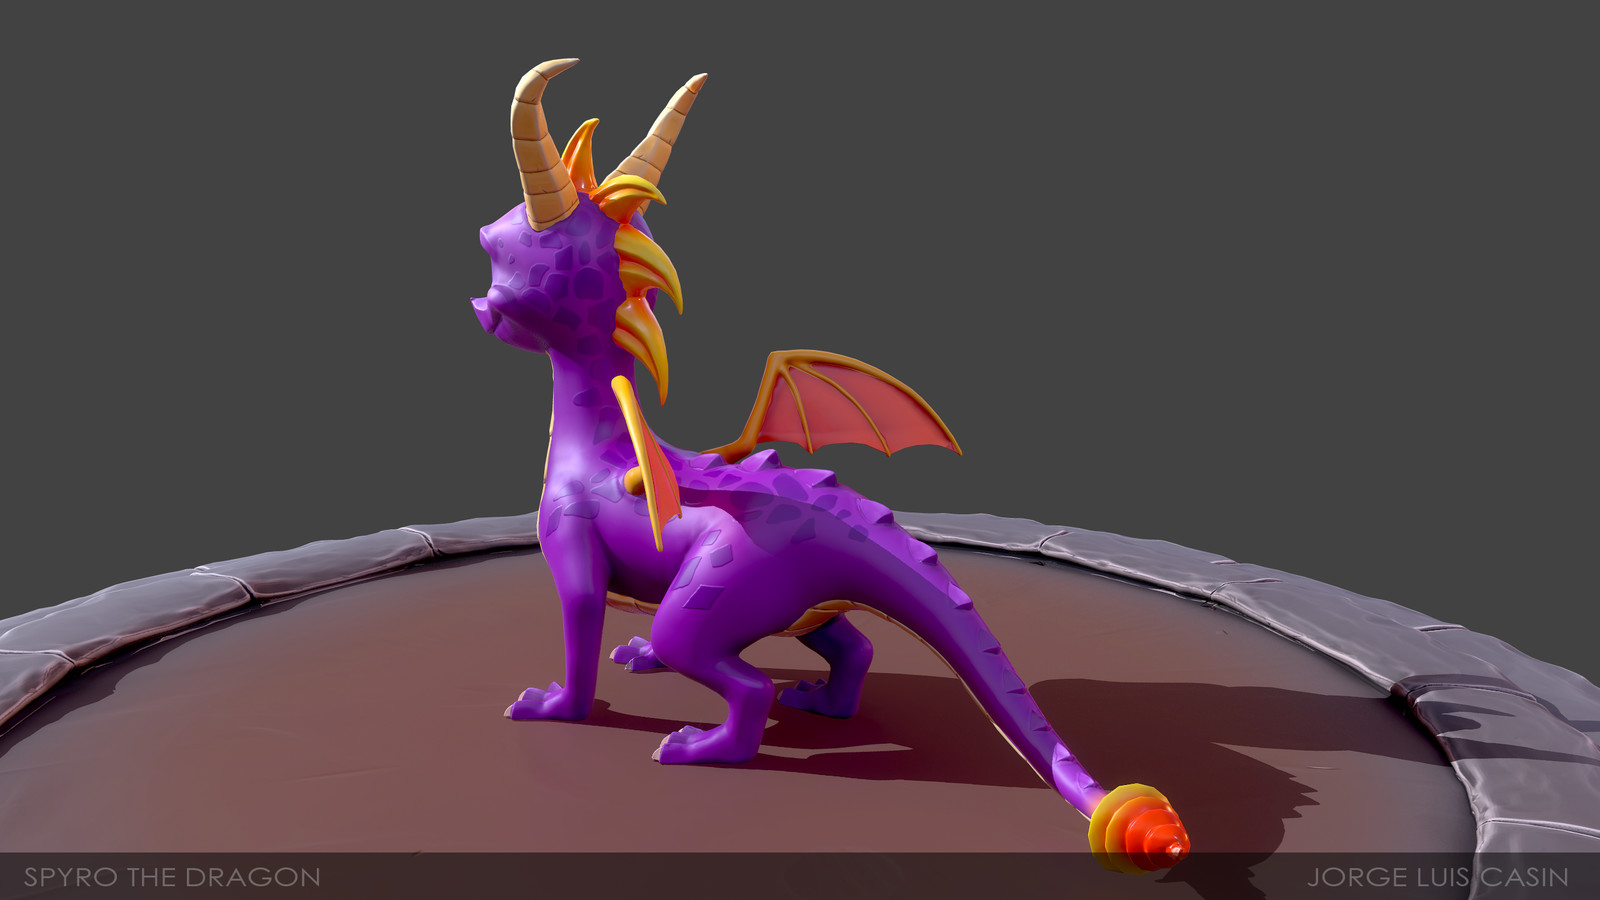 Spyro the dragon - Fan Art.